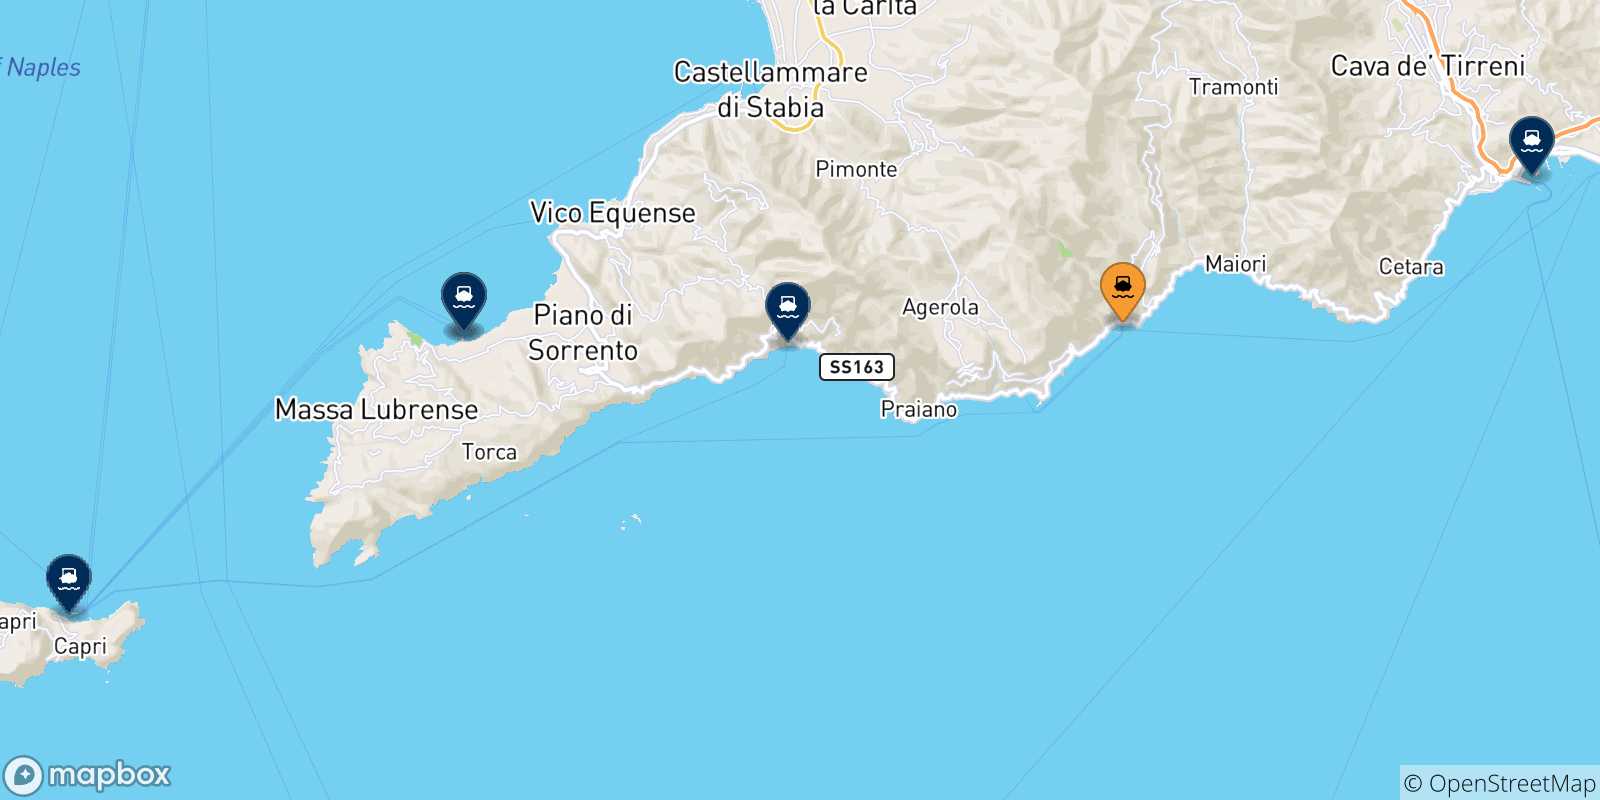 Mappa delle possibili rotte tra Amalfi e l'Italia